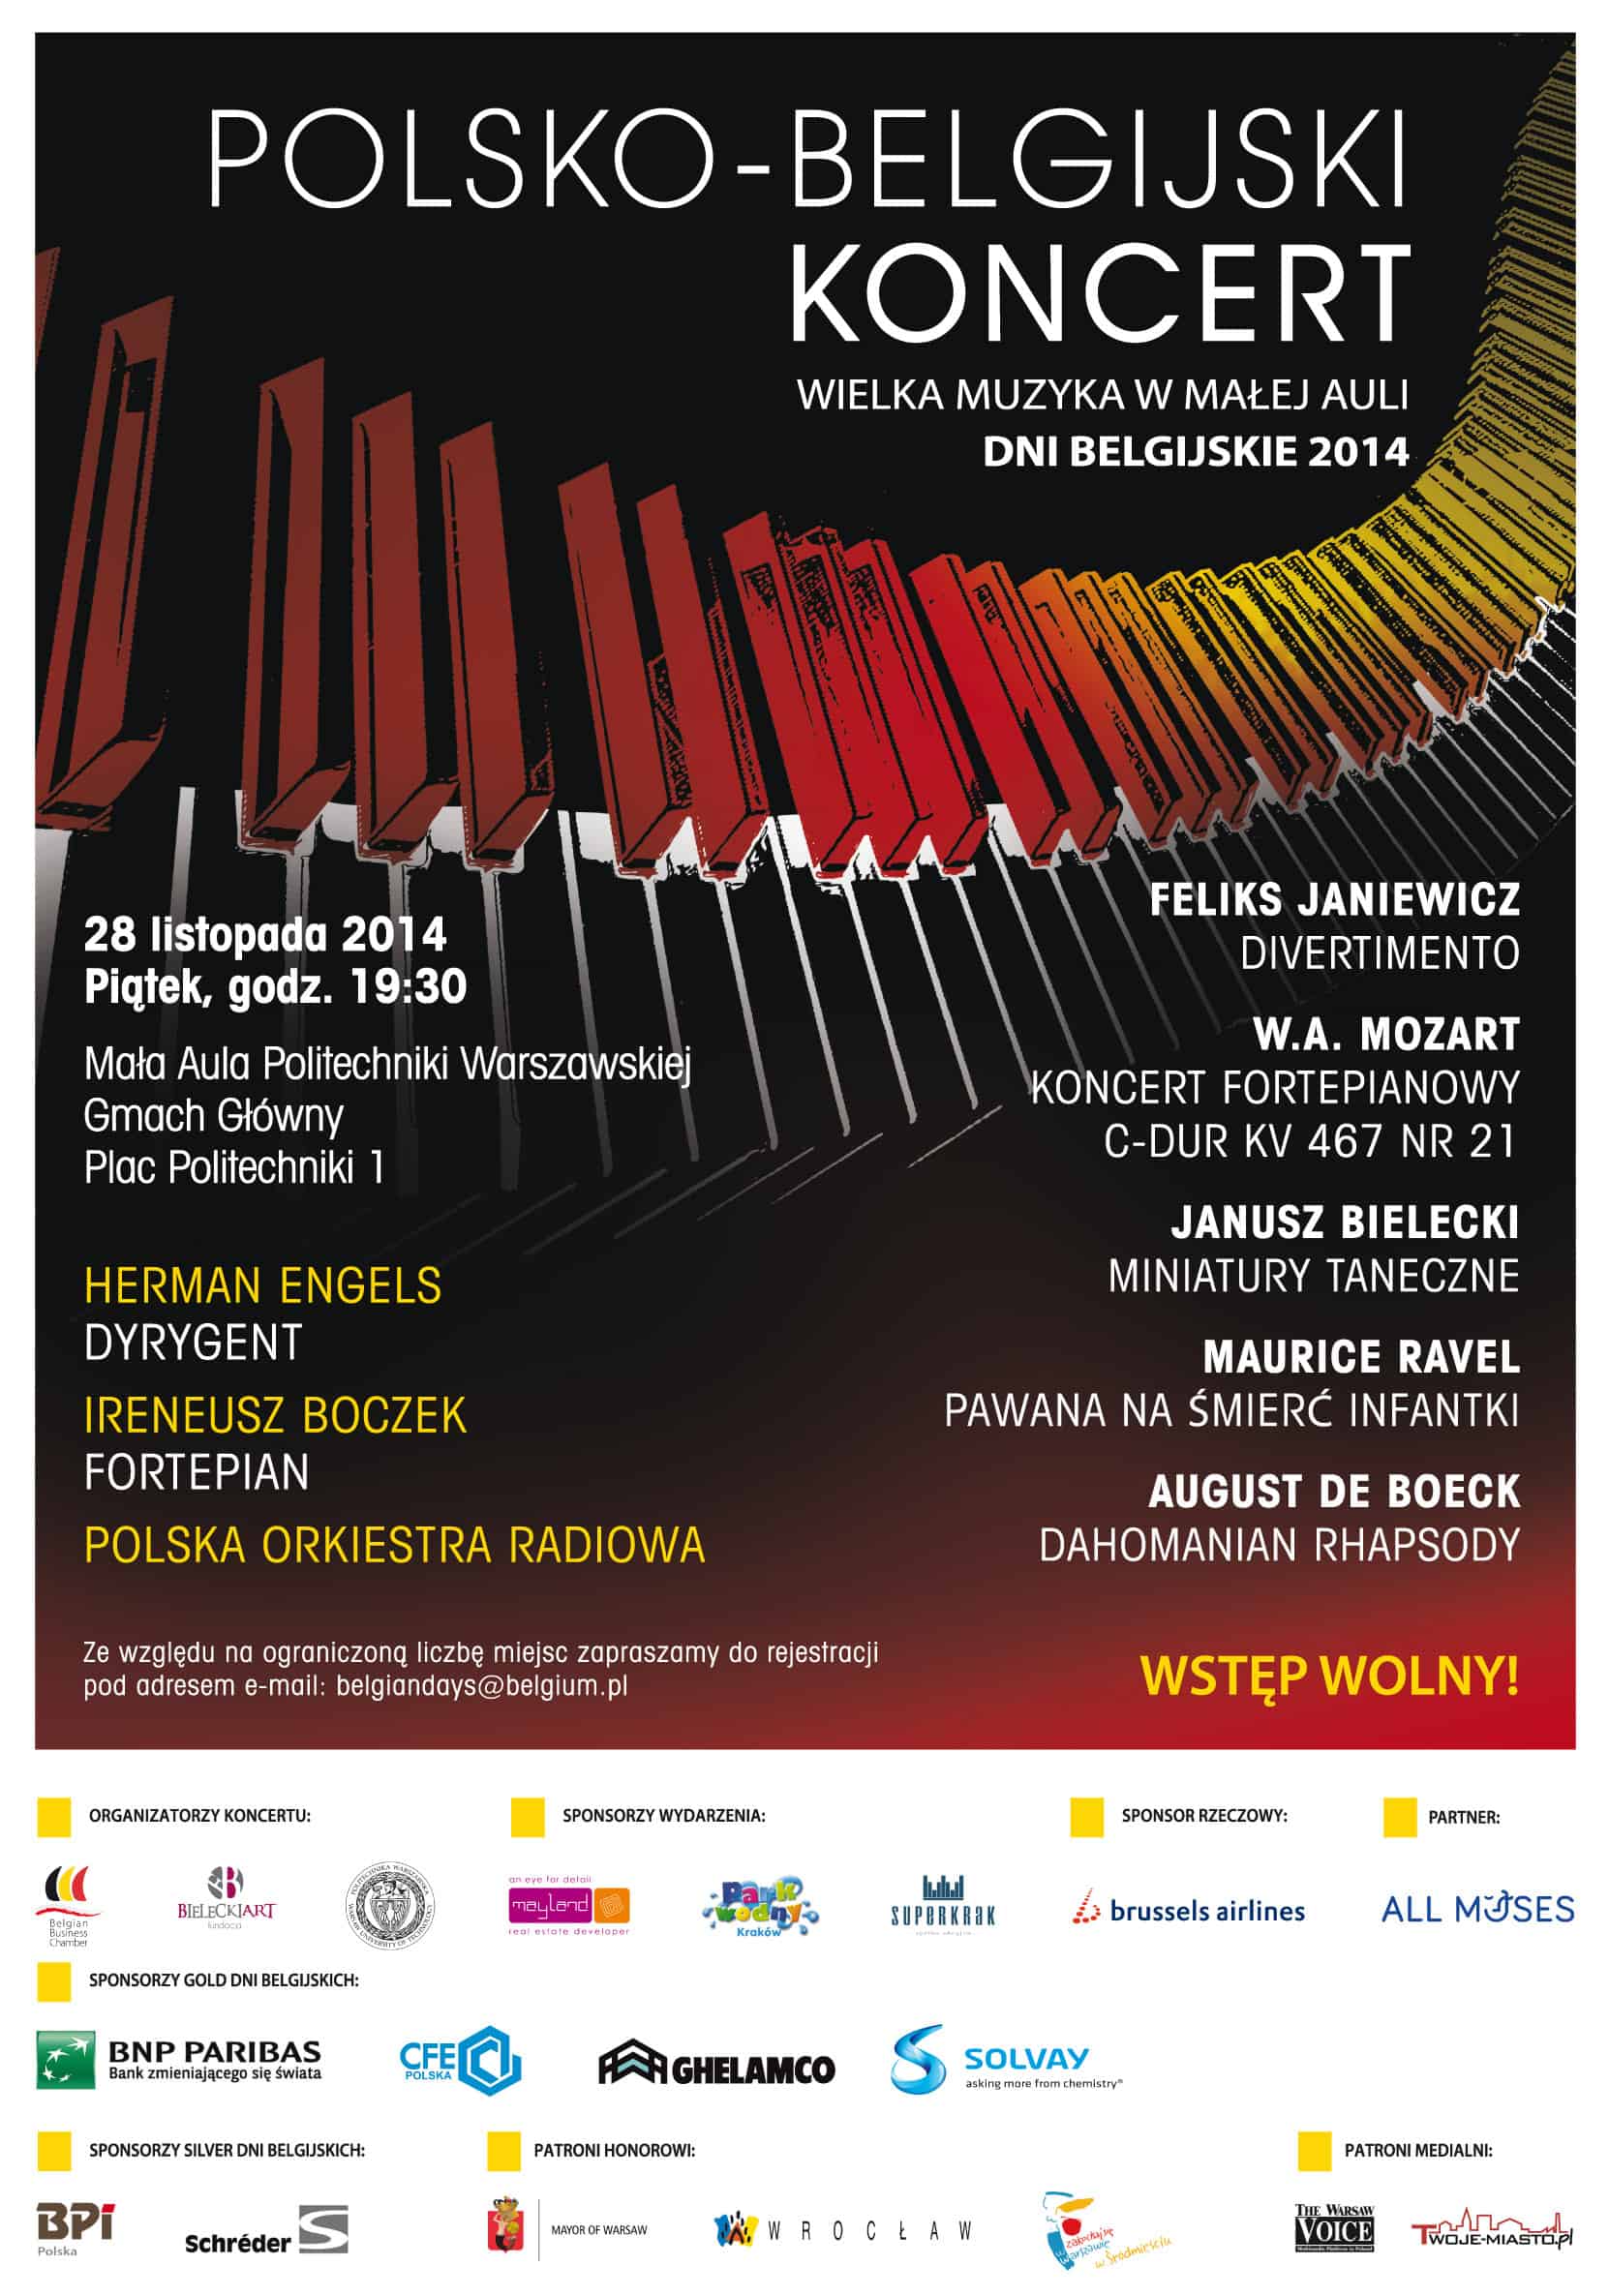 Polsko-belgijski koncert w Warszawie